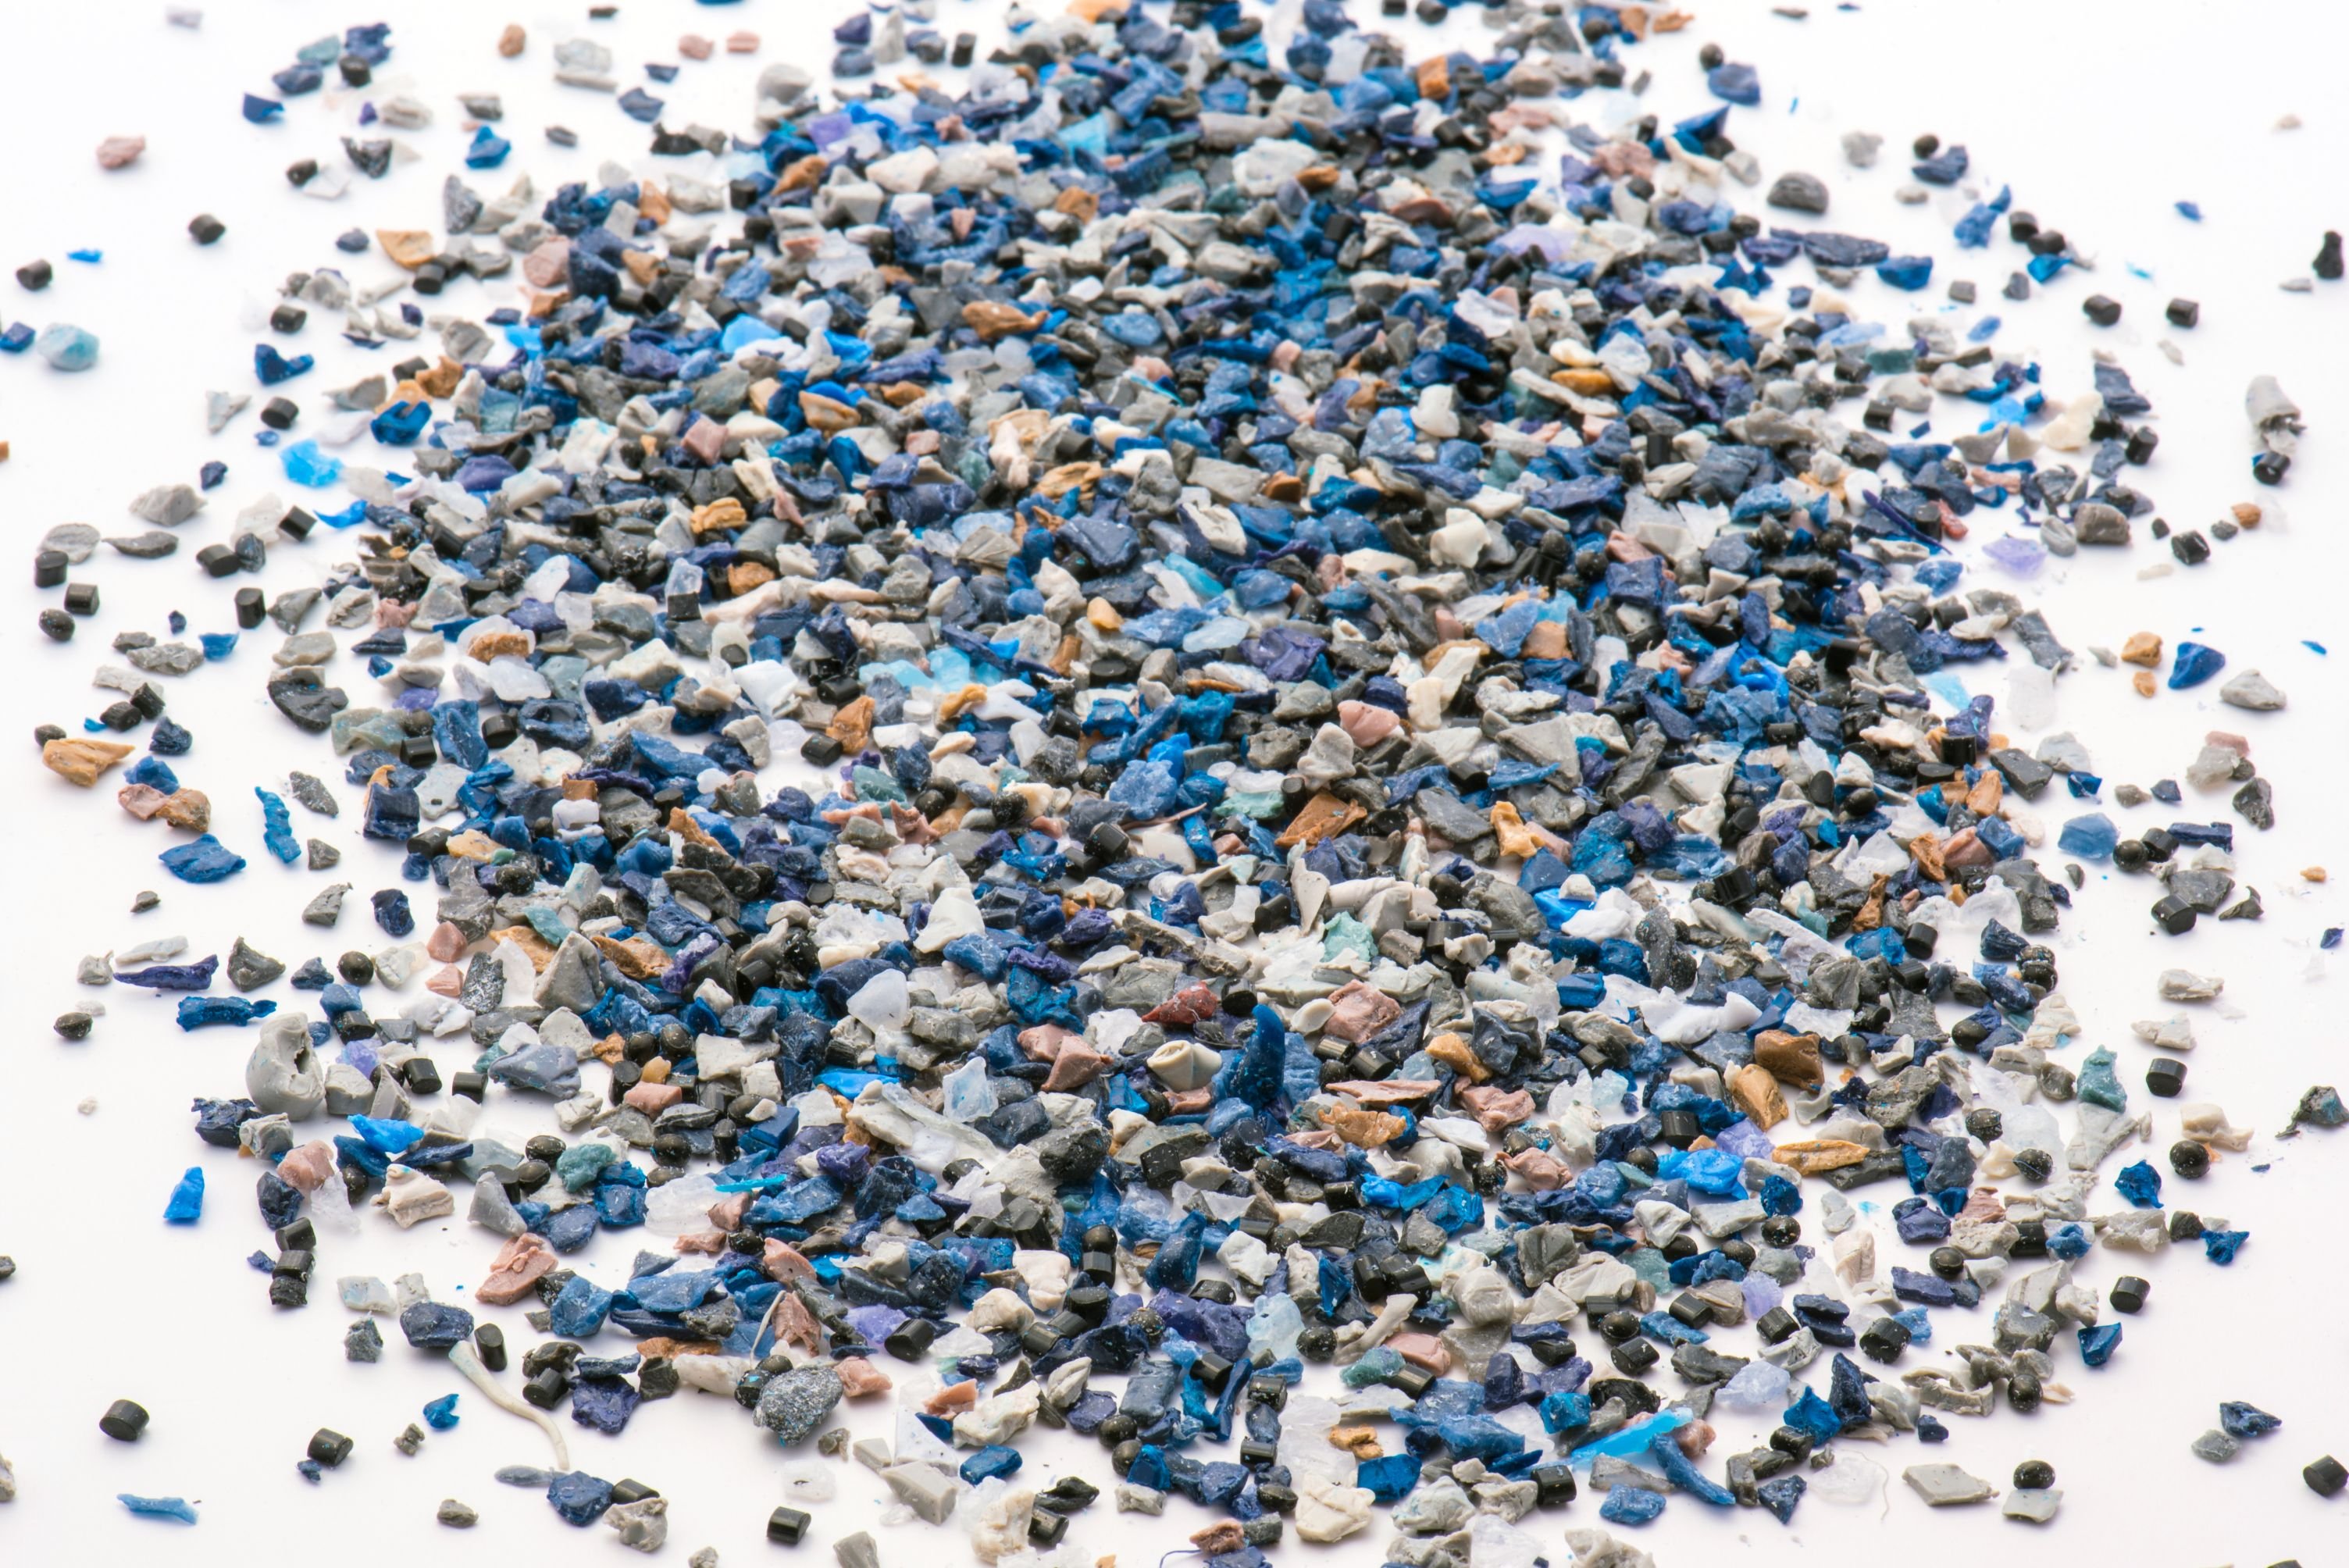 Plastiksteinchen auf weißer Fläche, Blautöne,  Türkis, Weiß, unregelmäßige Form und Oberfläche